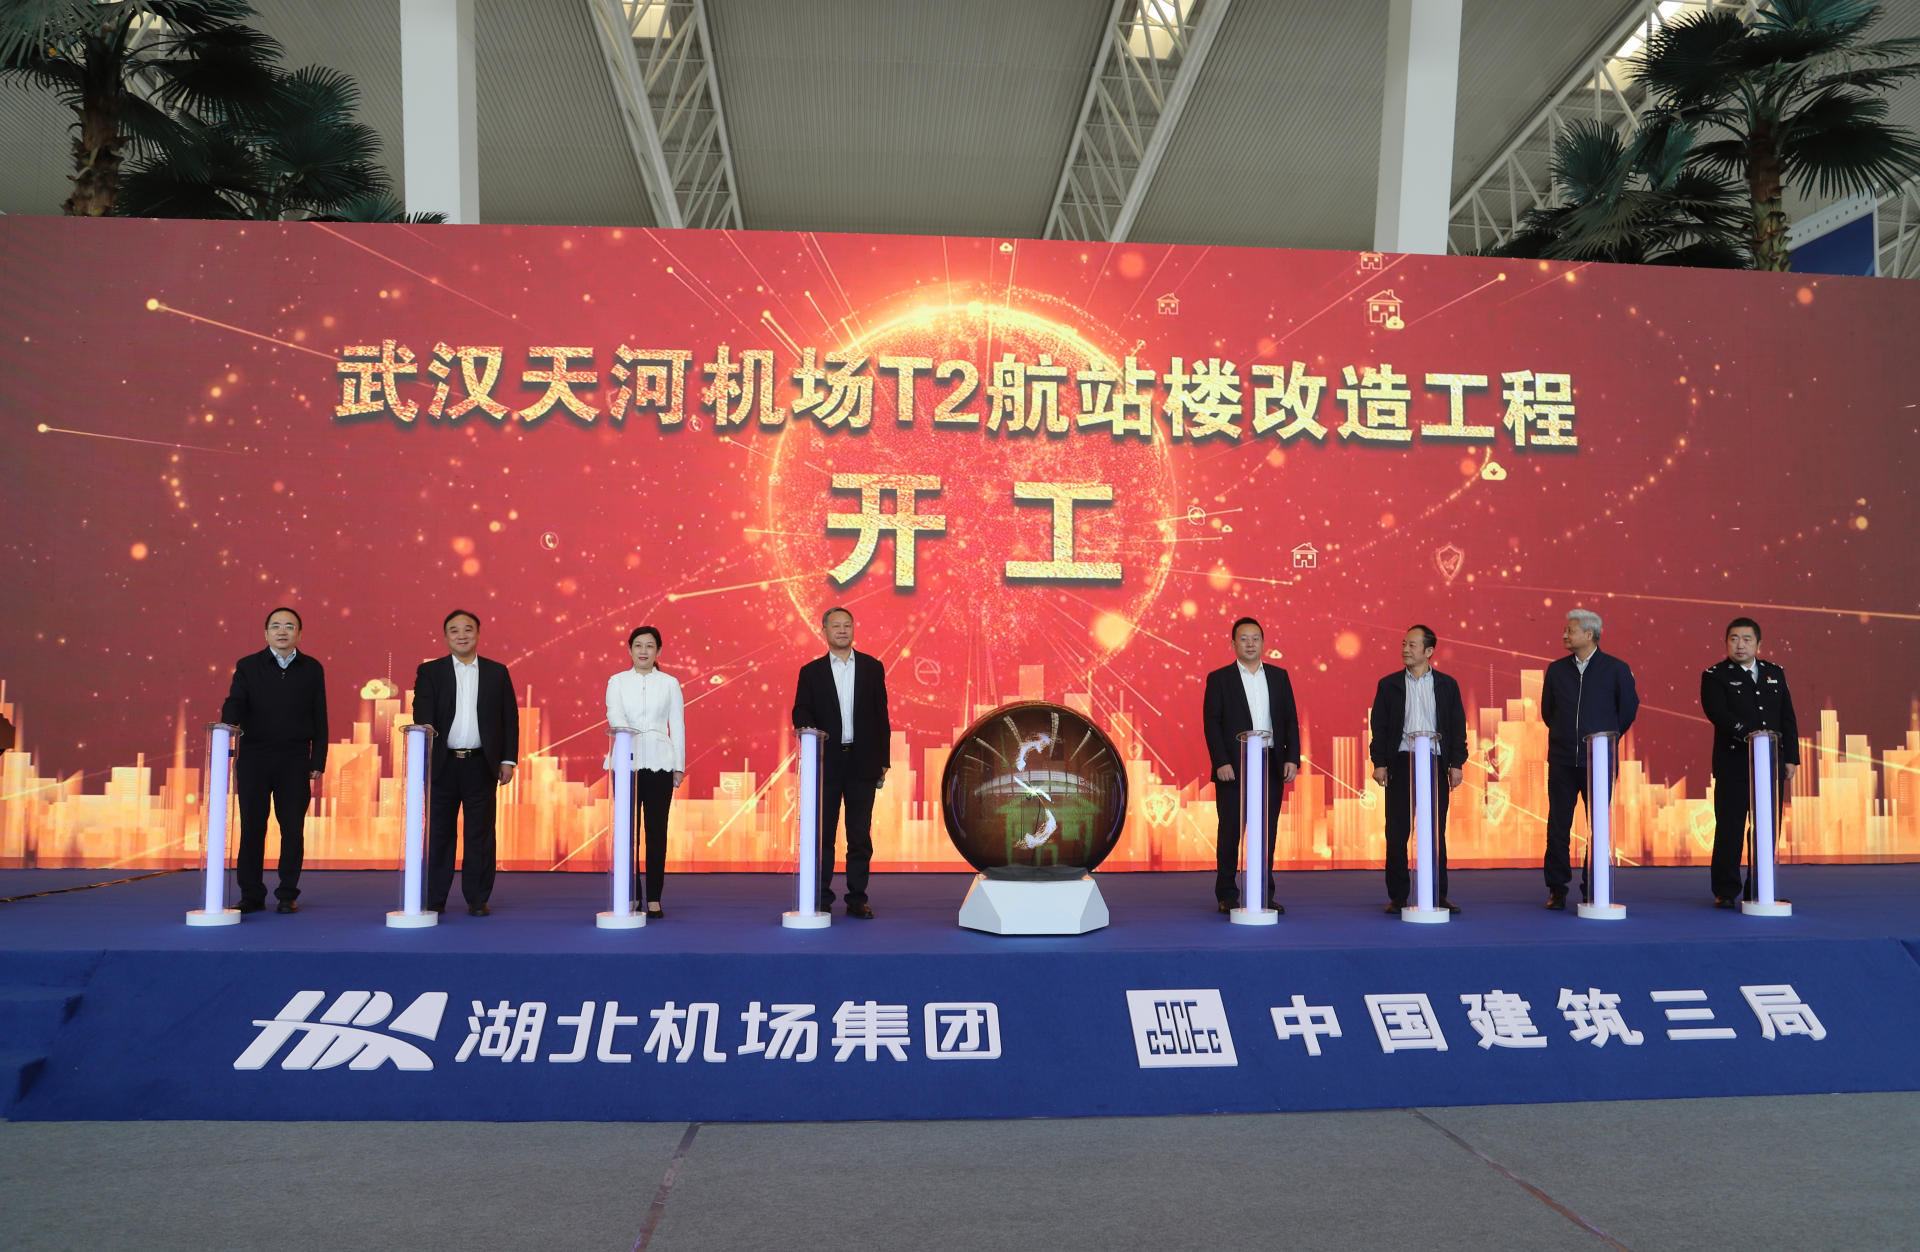 武汉天河机场t2航站楼启动改造投用后机场年旅客吞吐量达5000万人次